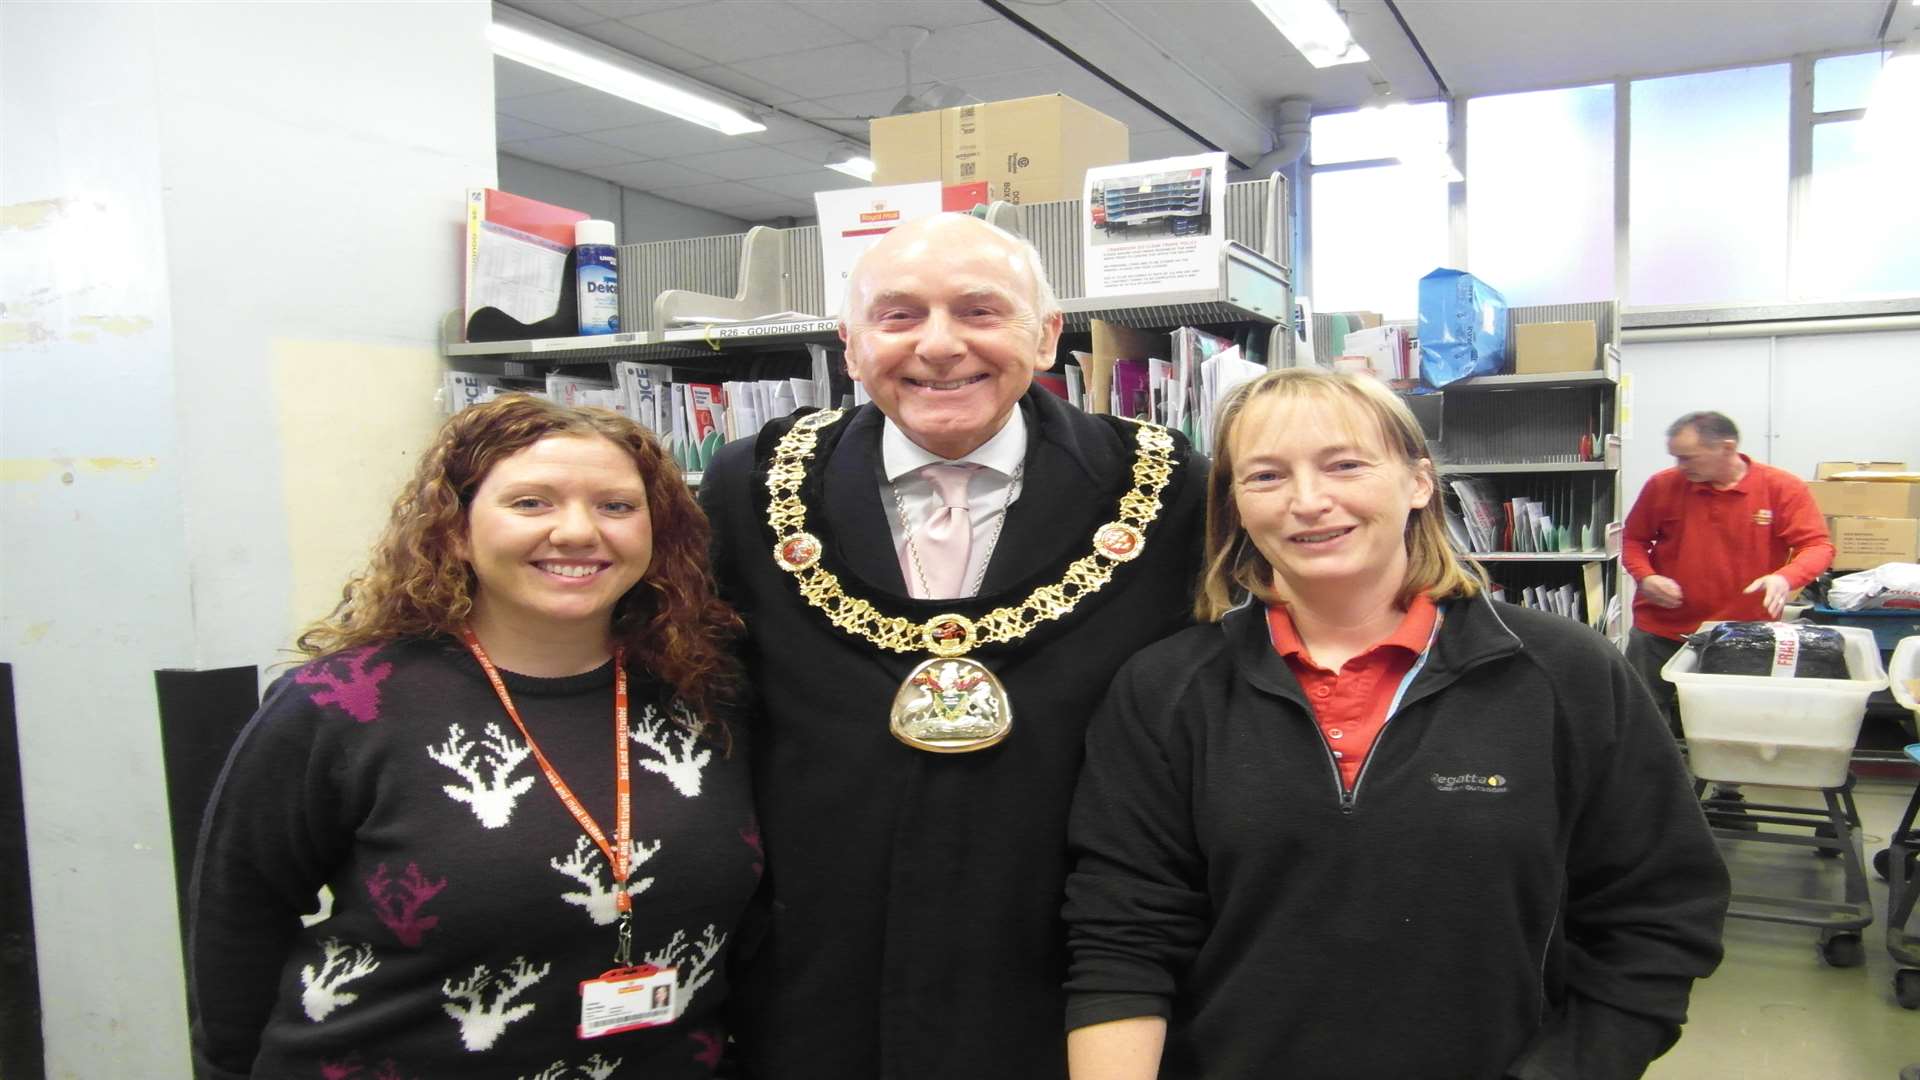 The Mayor of Tunbridge Wells spread Christmas cheer